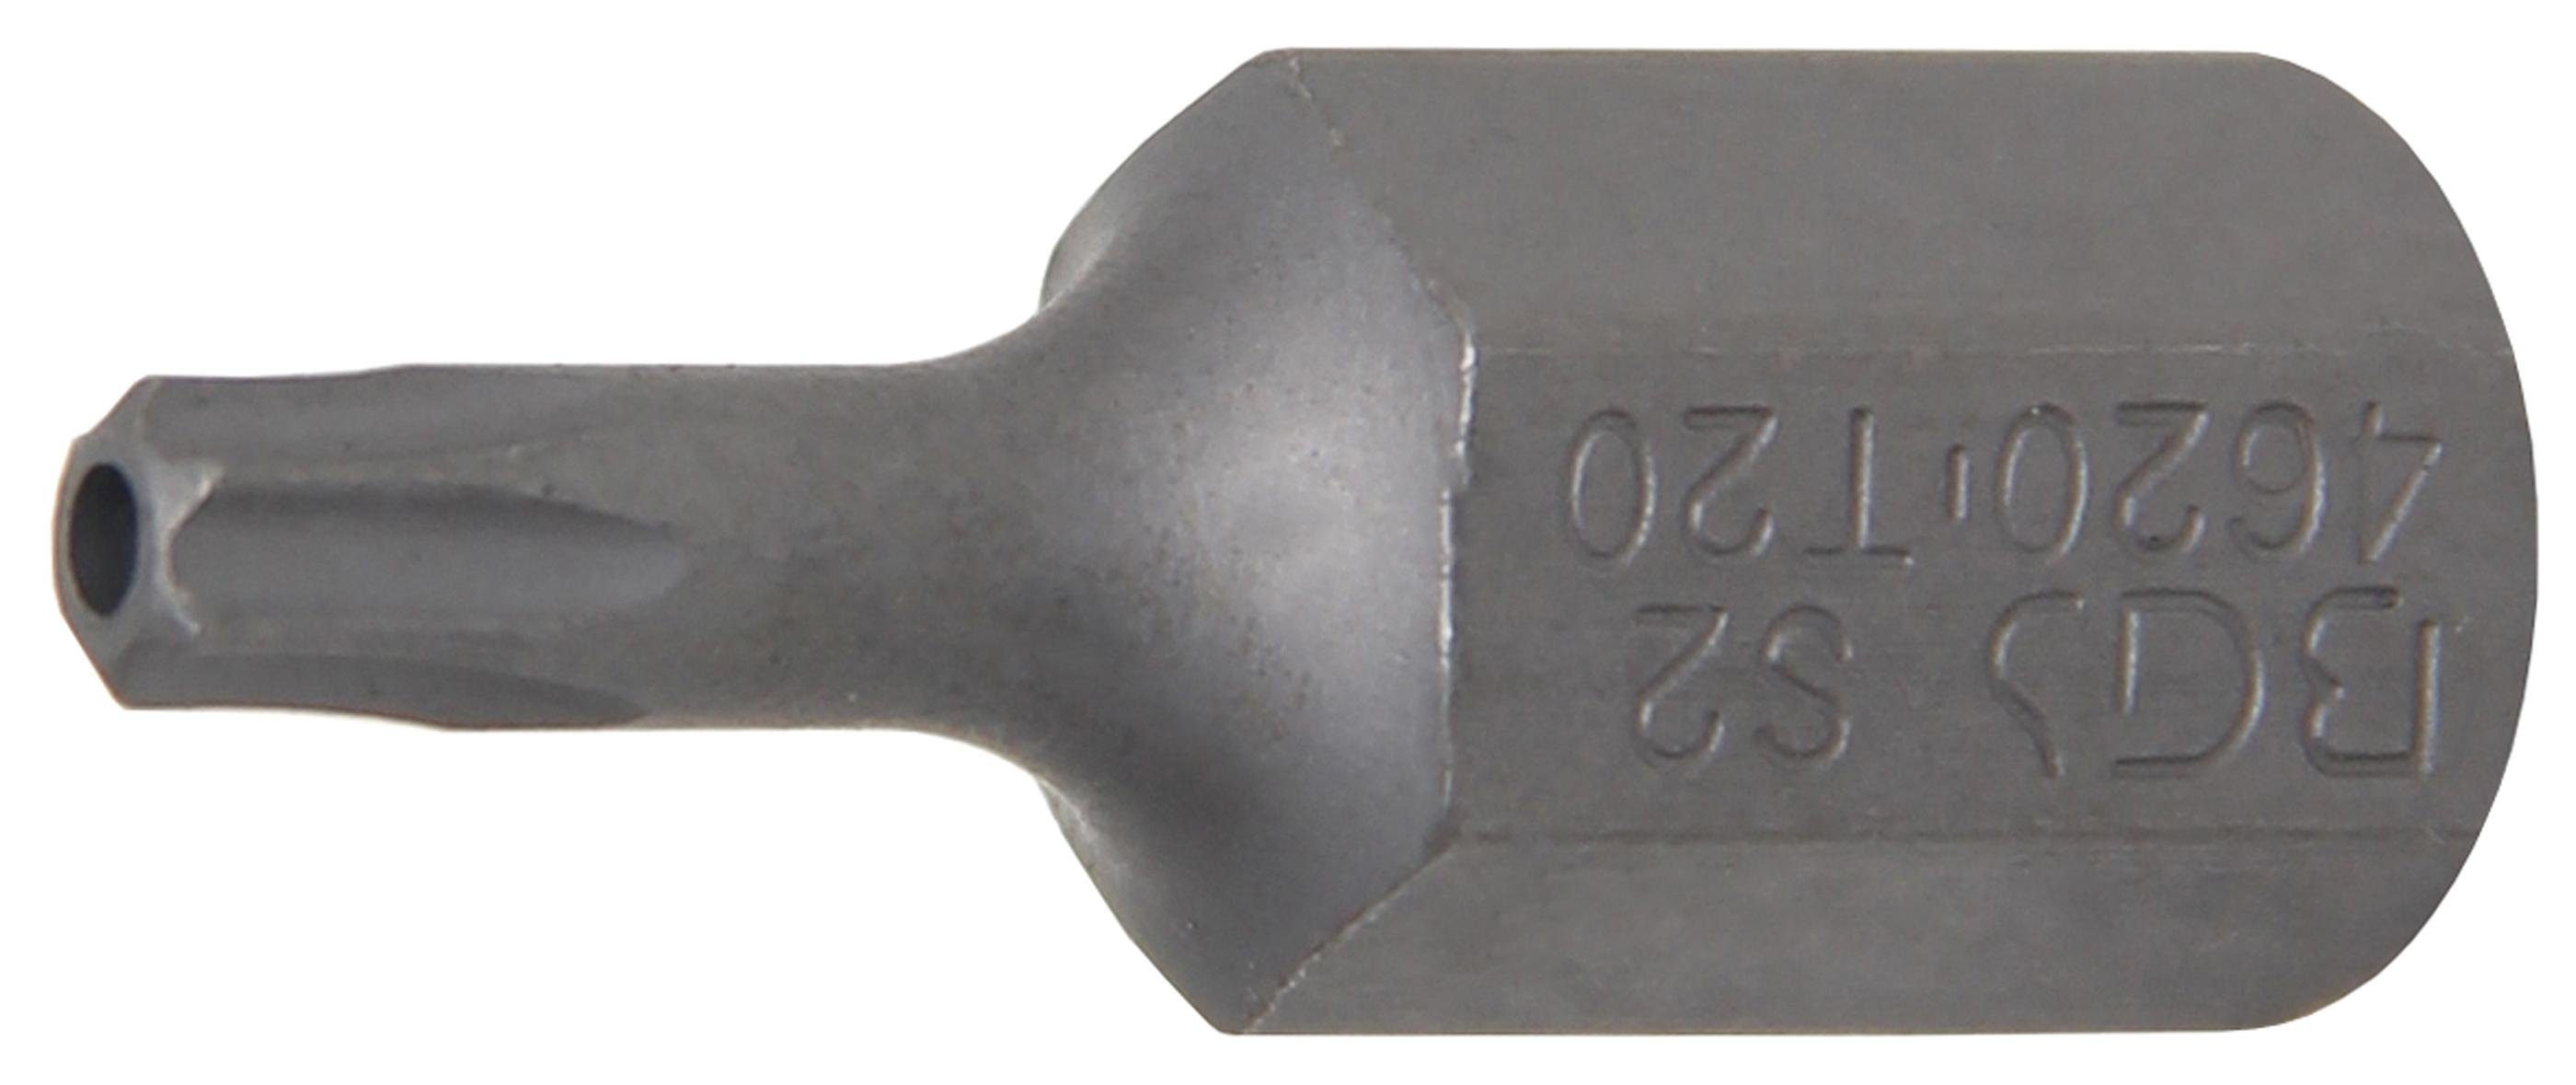 BGS technic Bit-Schraubendreher Bit, Länge 30 mm, Antrieb Außensechskant 10 mm (3/8), T-Profil (für Torx) mit Bohrung T20